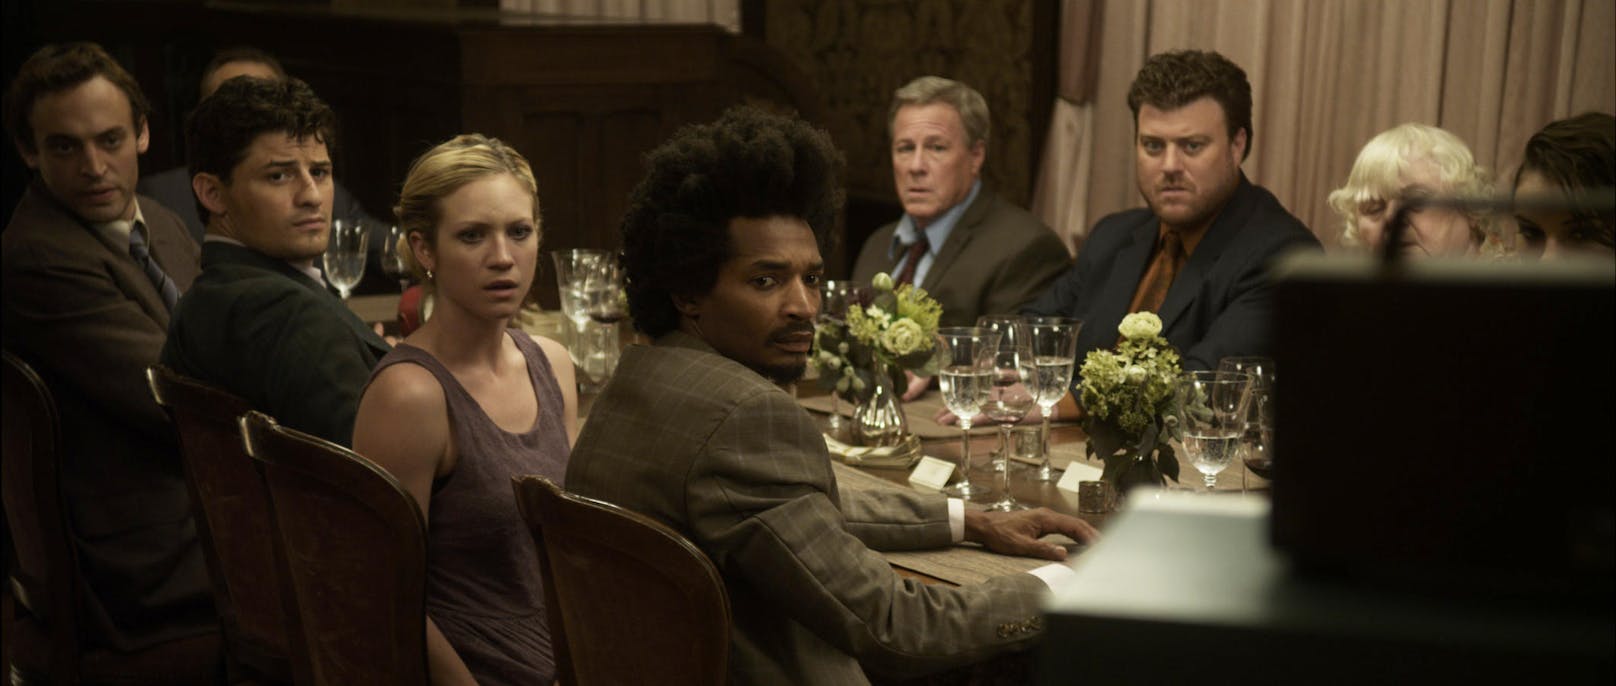 John Heard in einer Dinner-Szene in "Tödliches Spiel - Would Your Rather?" (2012).